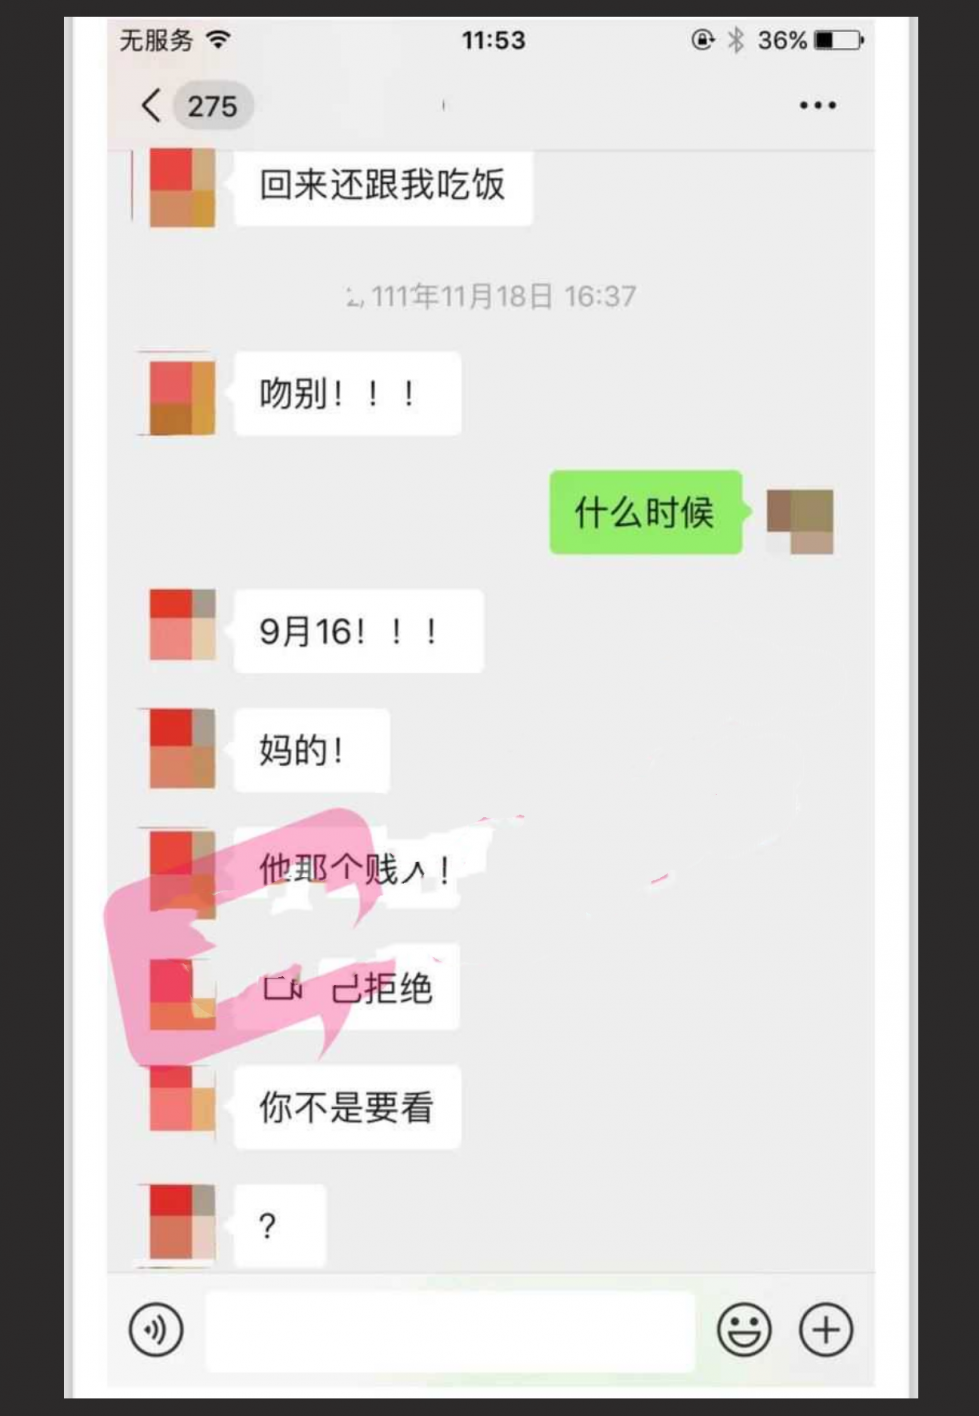 武汉理工大学已婚教授 张逸石 偷拍30G女性视频 偷拍视频遭全网疯传！